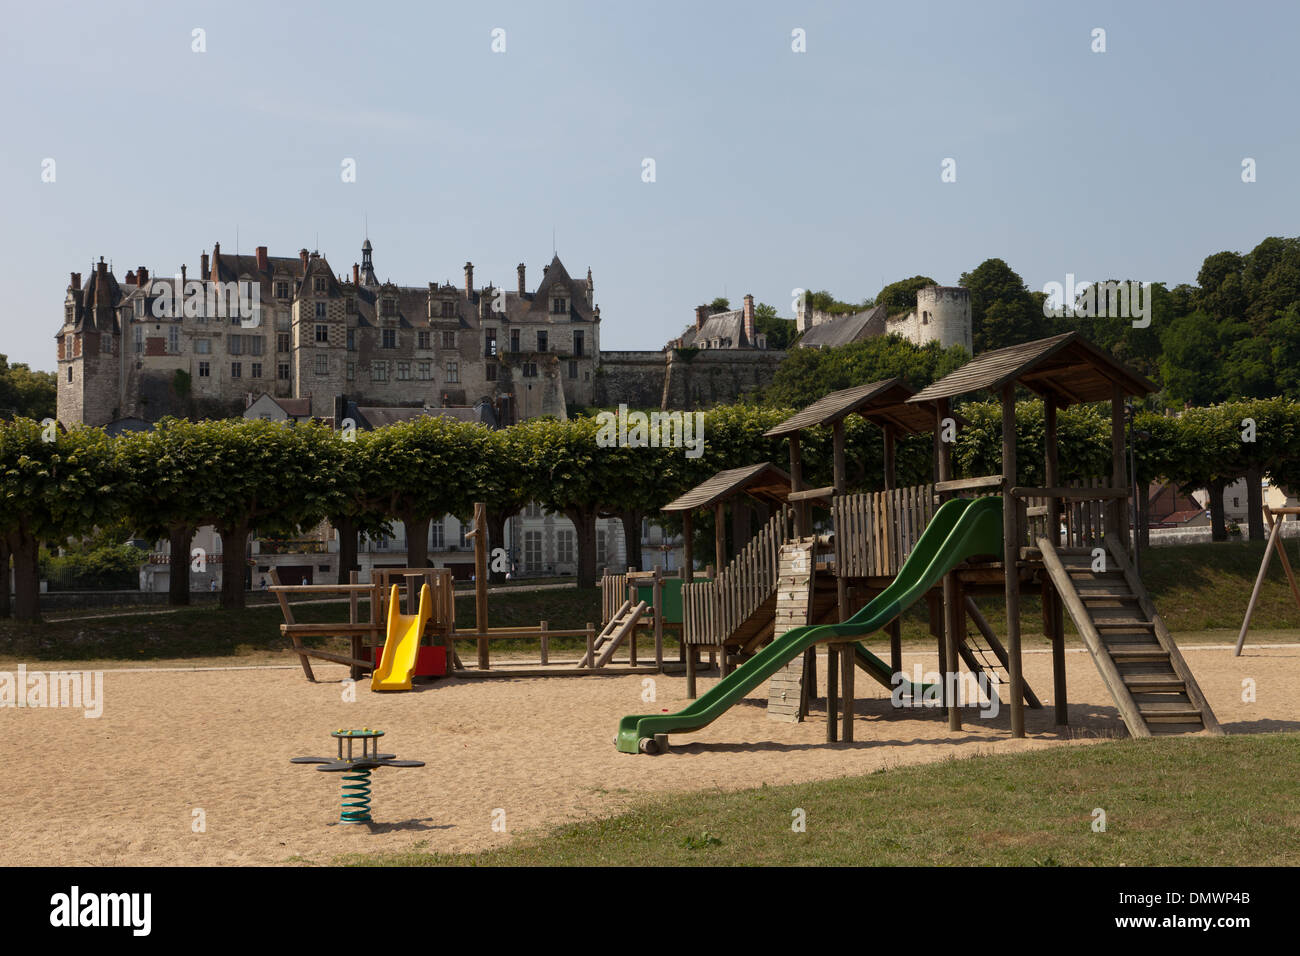 Chateau Saint-Aignan desde el otro lado del río, mirando hacia la ciudad, con juegos para niños en primer plano Foto de stock